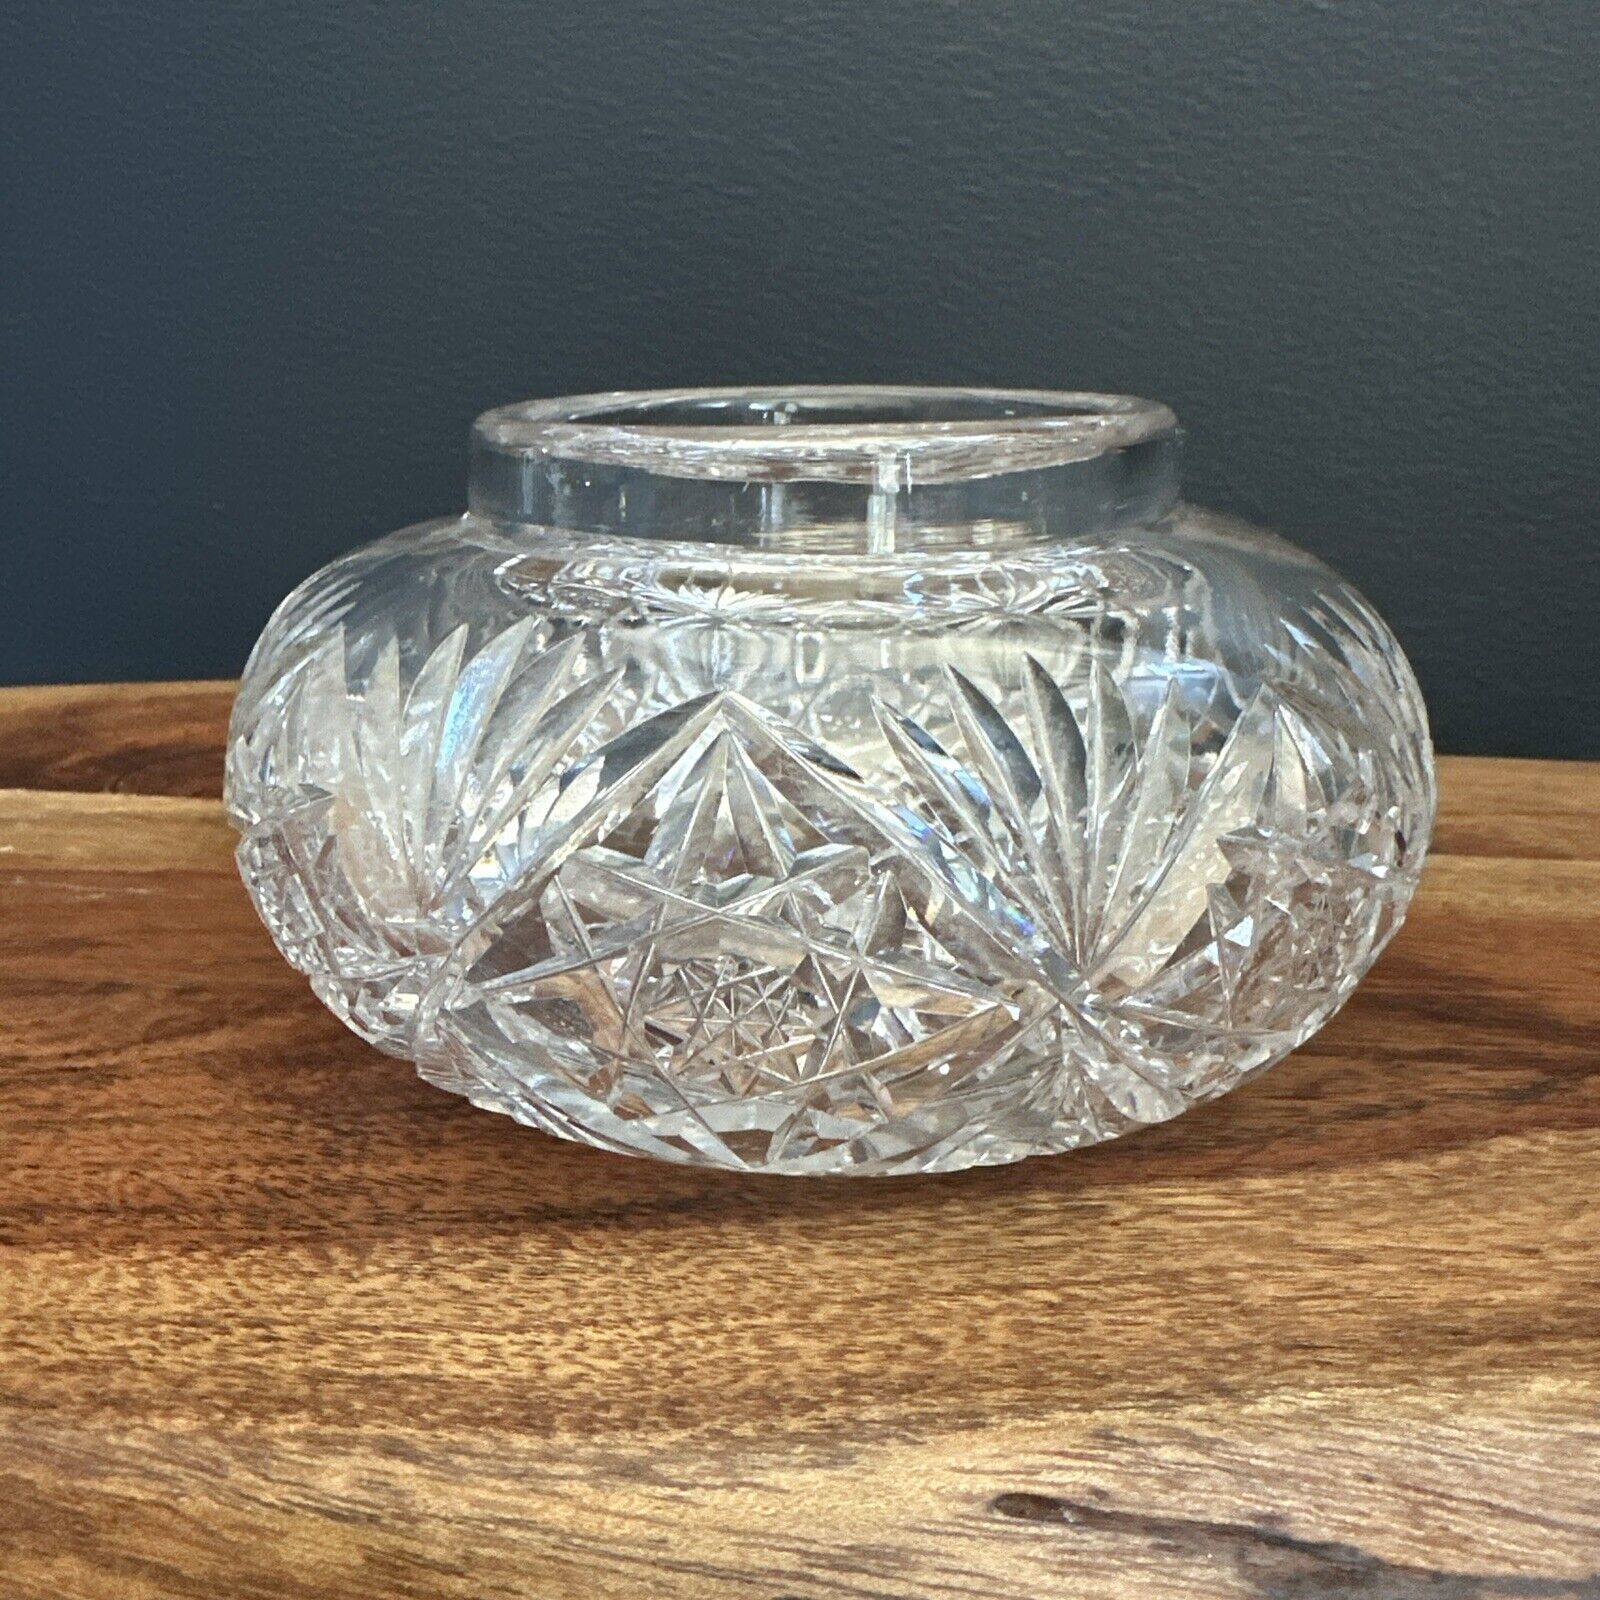 Antique Art Deco Brilliant Cut Crystal Bowl Jar (No Lid) Sparkling And Heavy